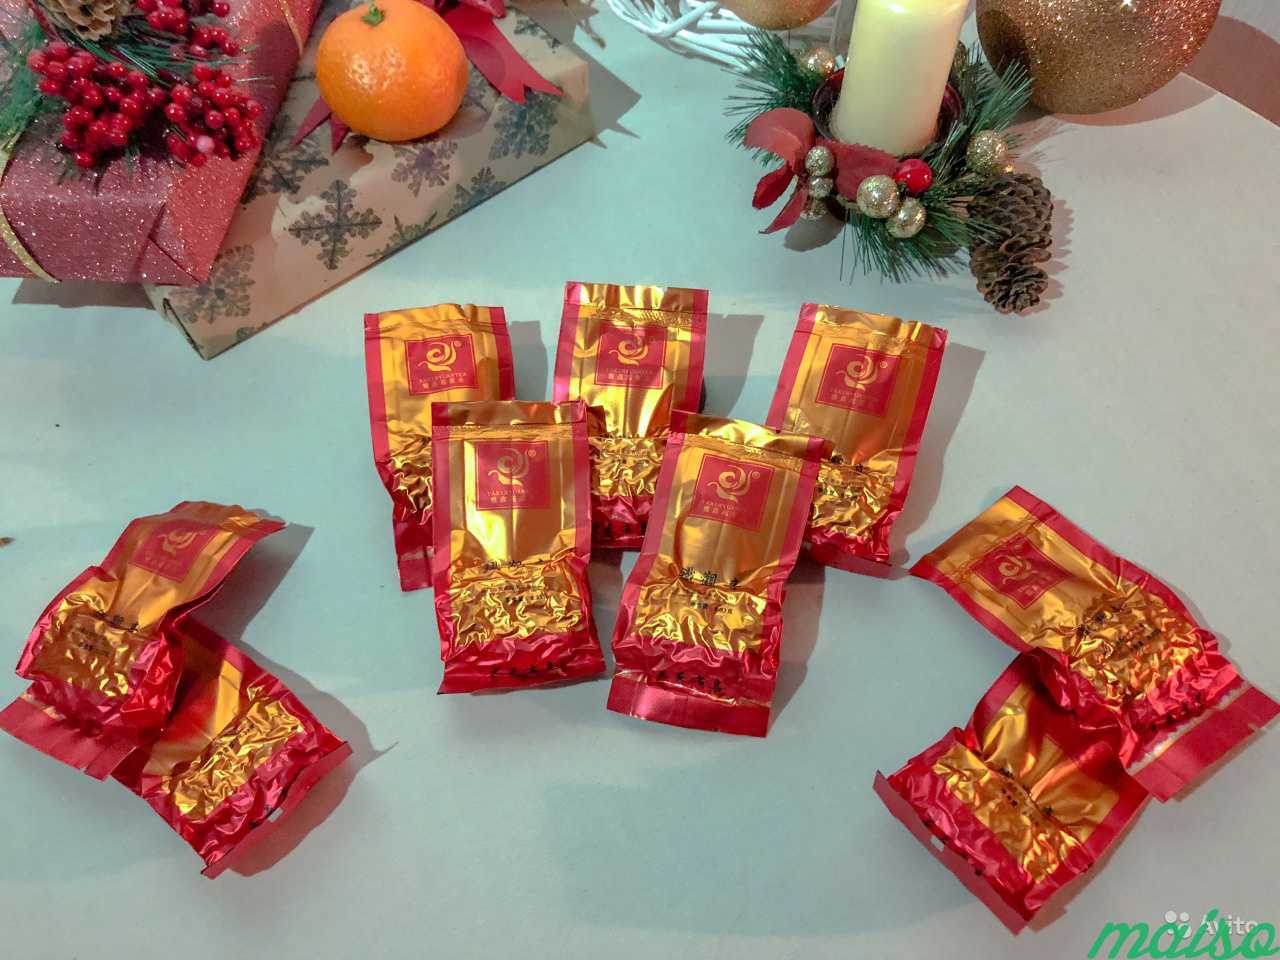 Чай из Китая. Новогодние подарки на любой вкус в Санкт-Петербурге. Фото 1